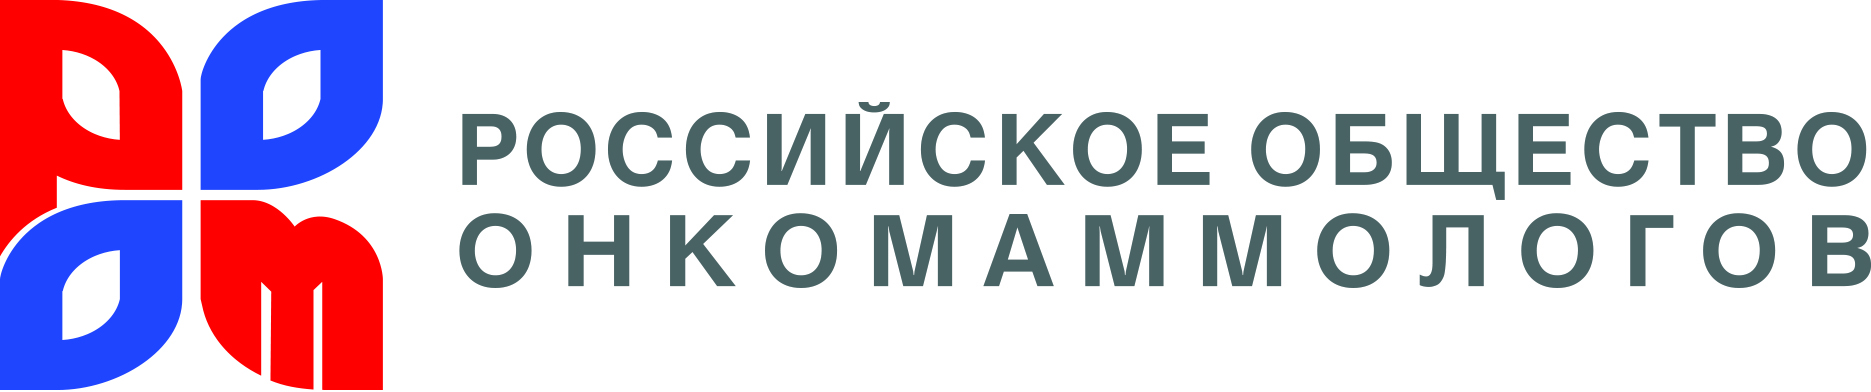 Российское общество онкомаммологов (РООМ)